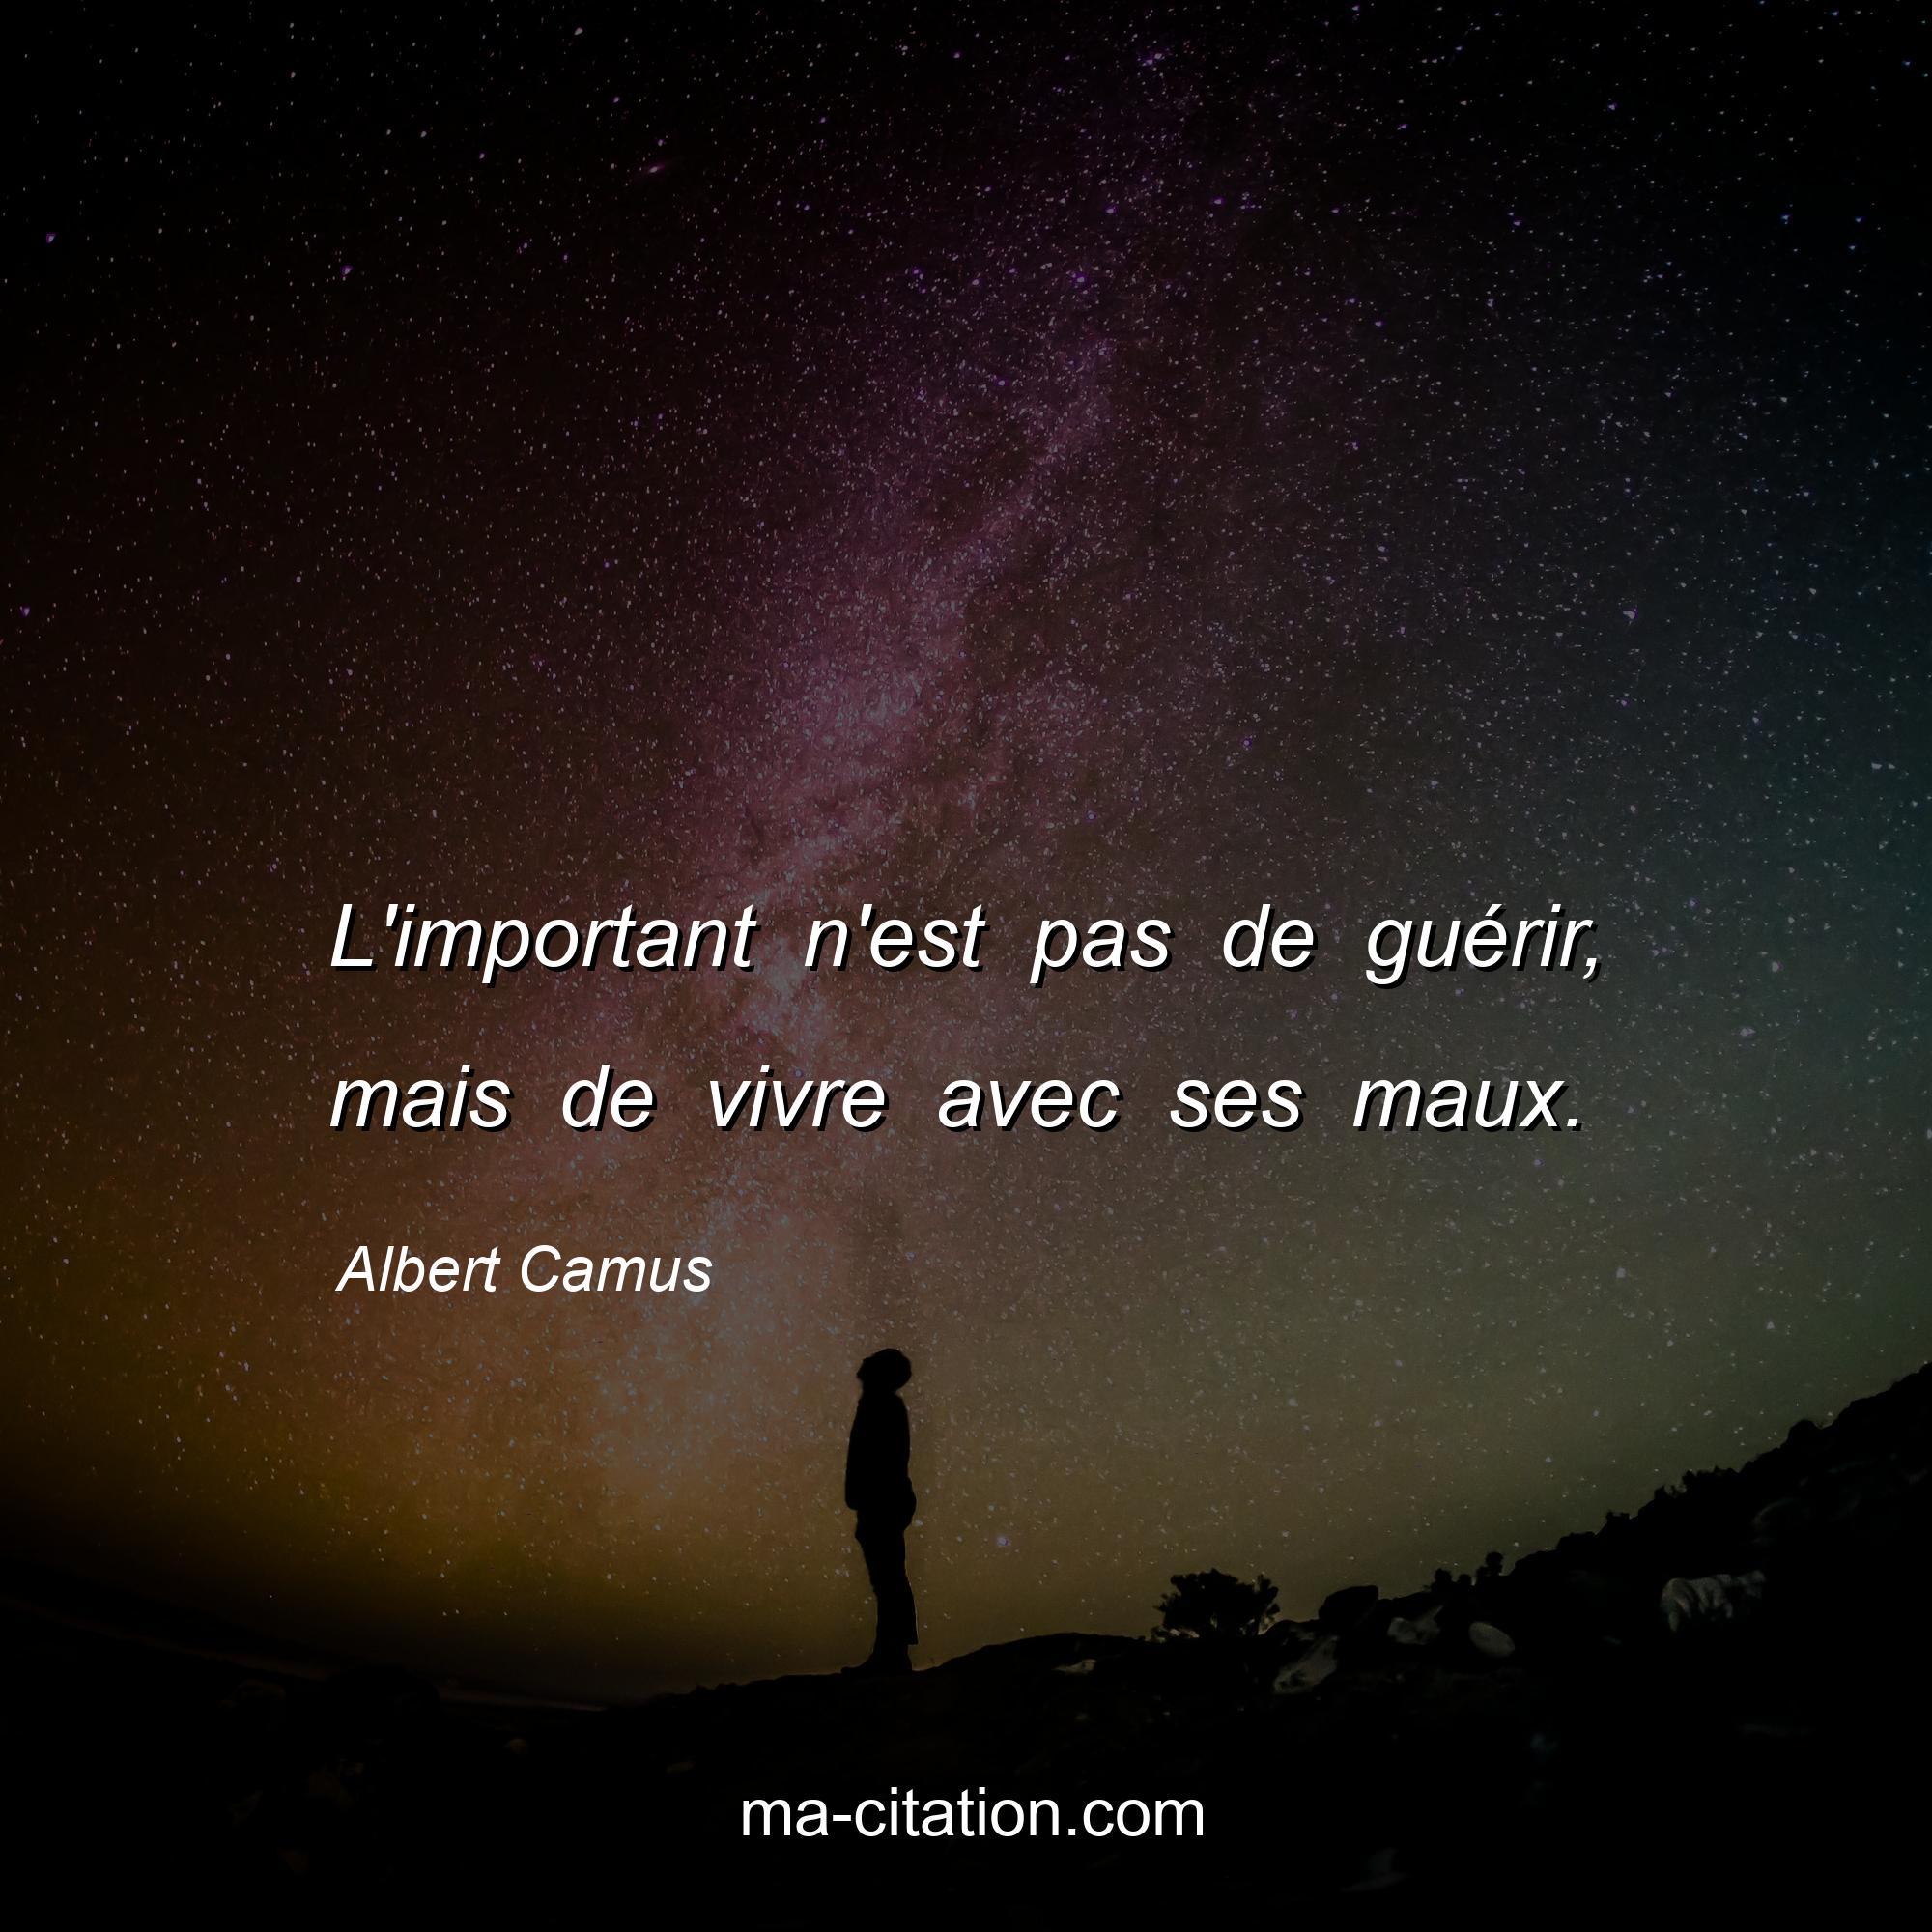 Albert Camus : L'important n'est pas de guérir, mais de vivre avec ses maux.